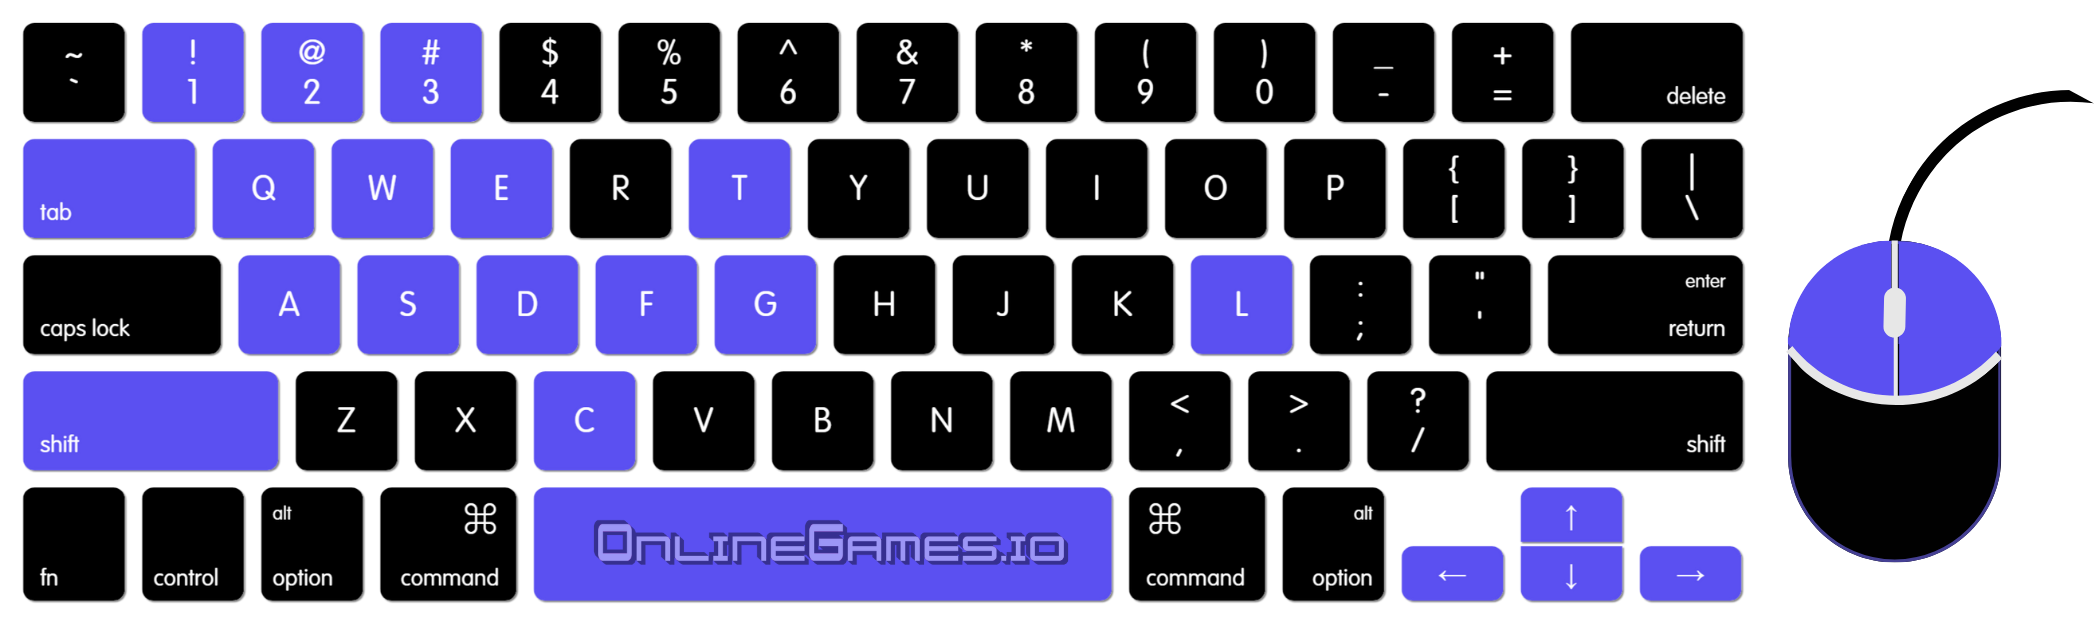 Guerillas Io Keyboard Controls